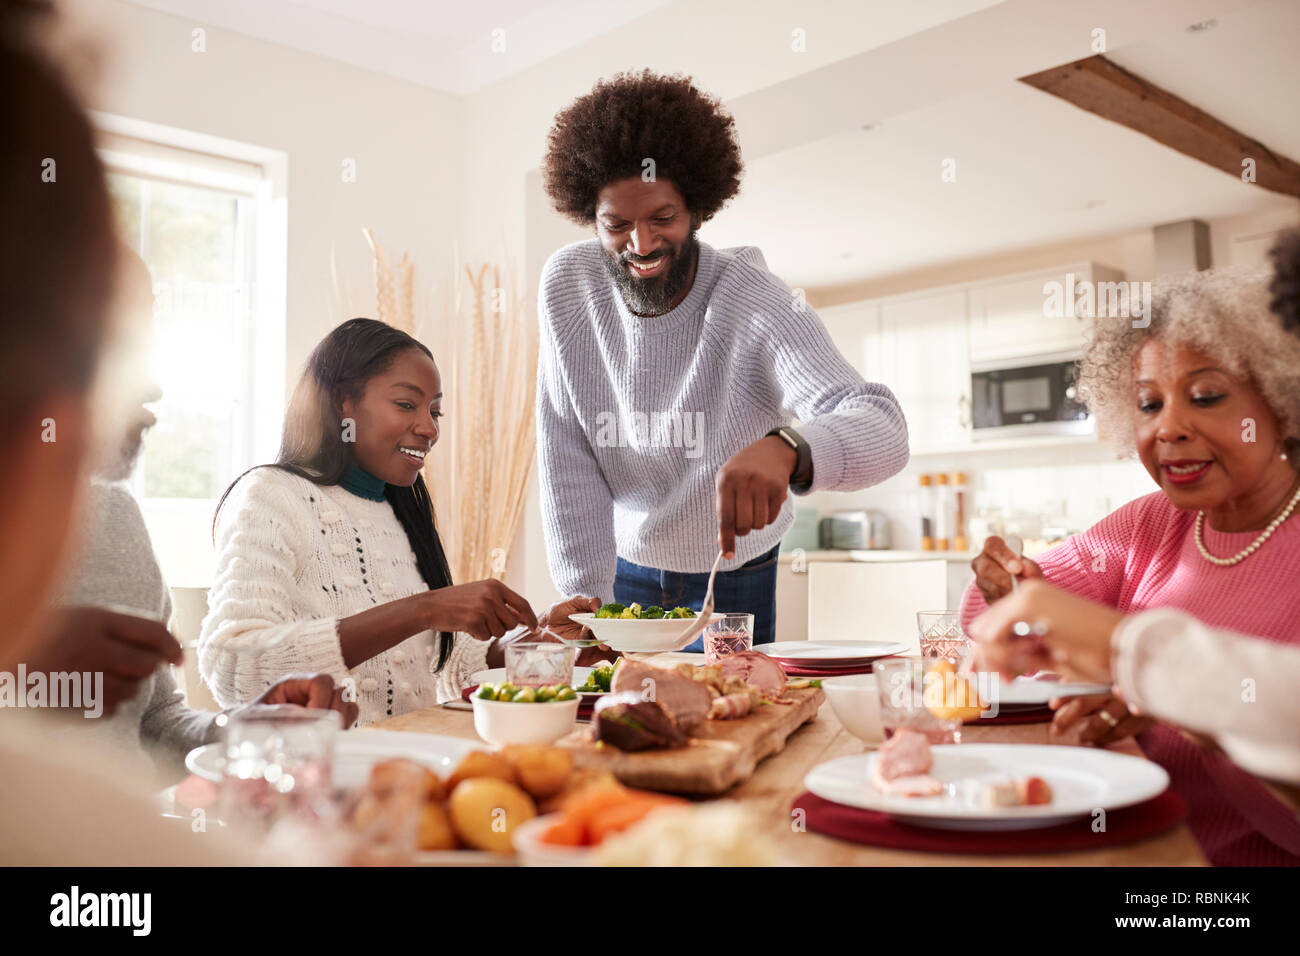 Persone di mezza età uomo nero carving e servire la carne a domenica cena in famiglia con il suo partner, i bambini e i loro nonni, vista frontale Foto Stock